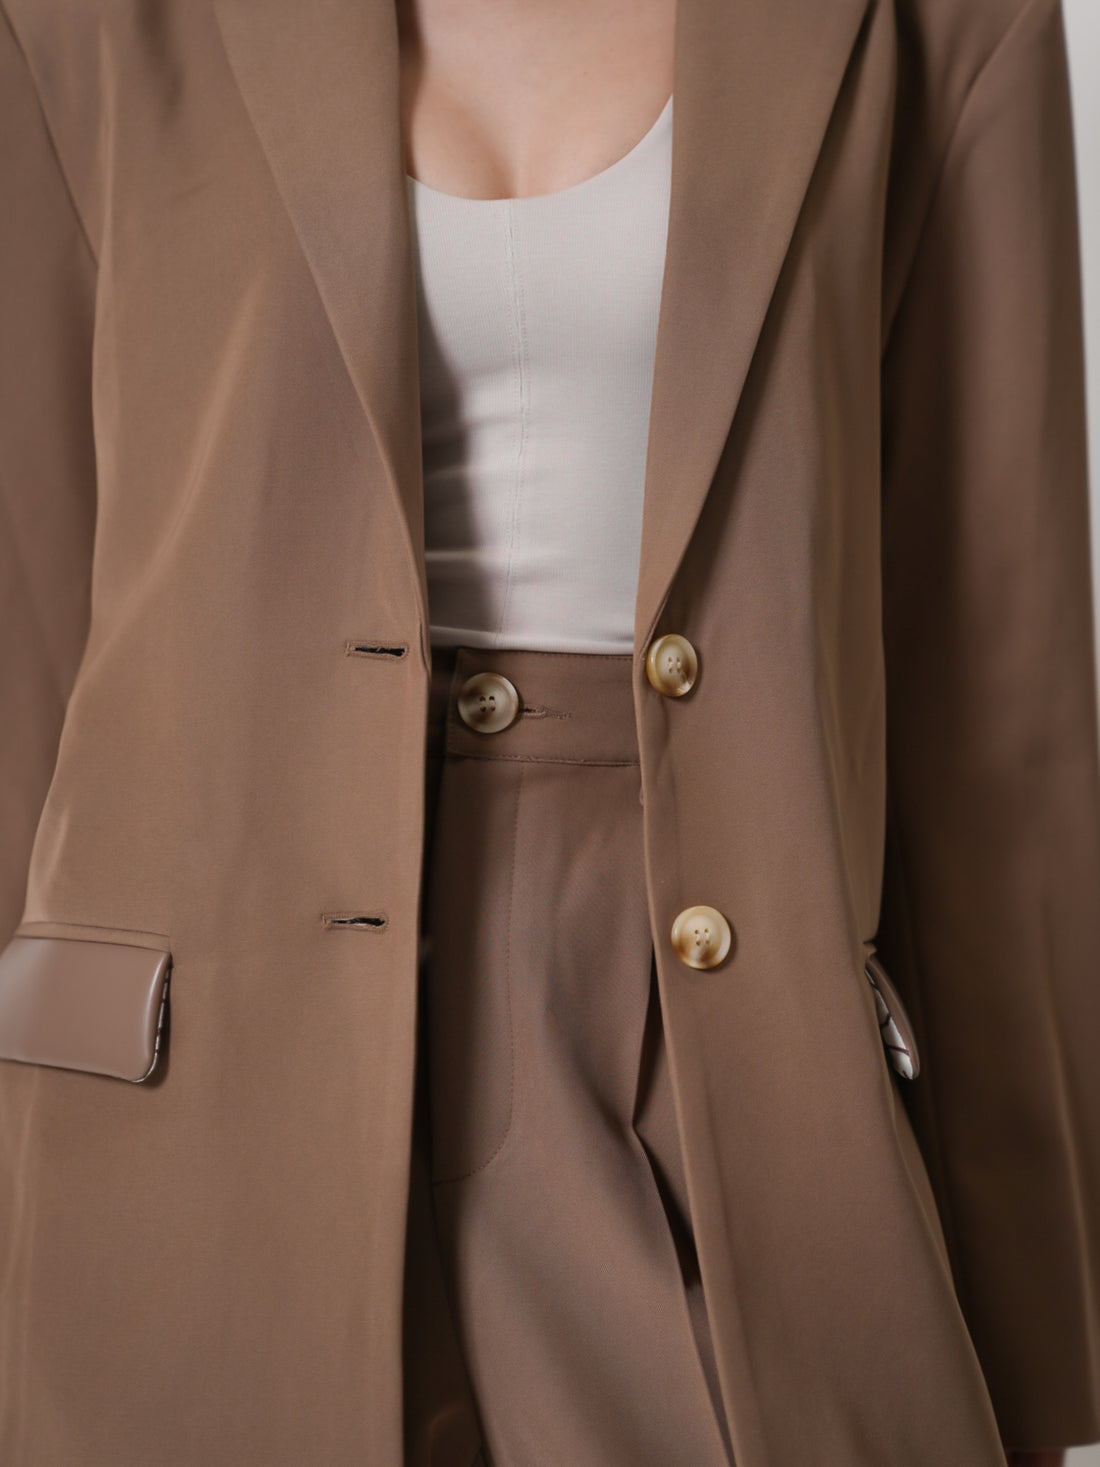 luxe padded blazer jacket / beige